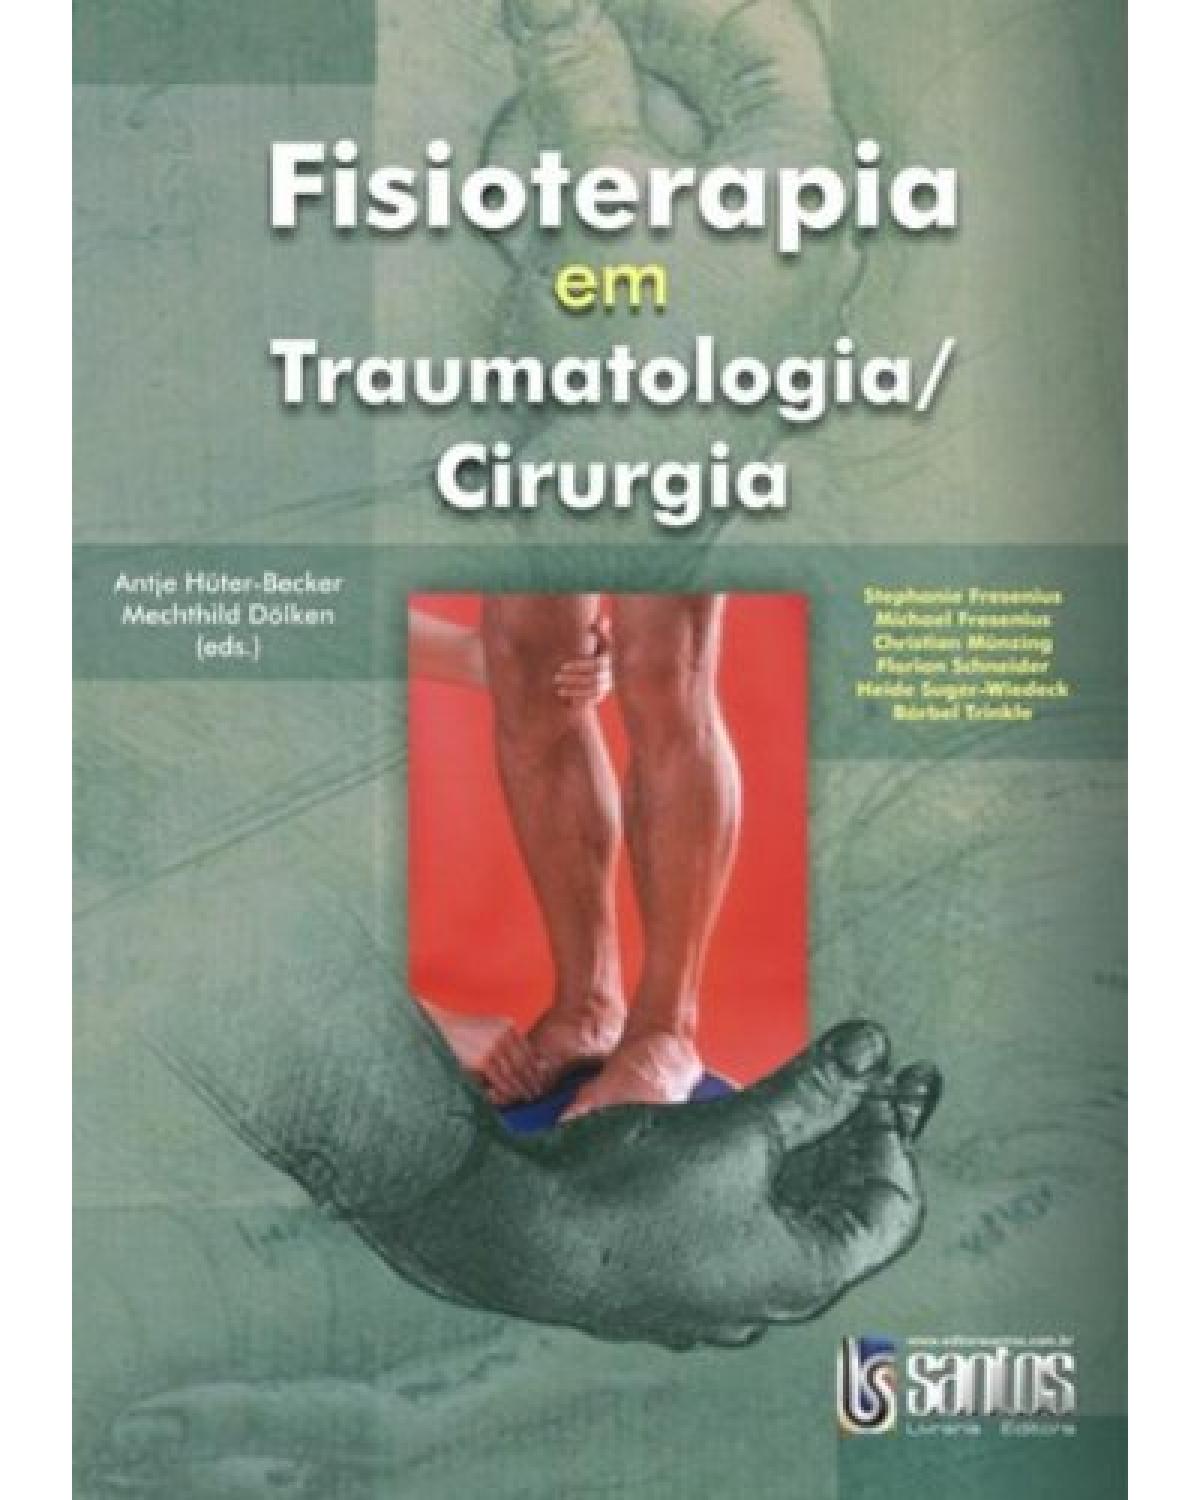 Fisioterapia em traumatologia / cirurgia - 1ª Edição | 2007